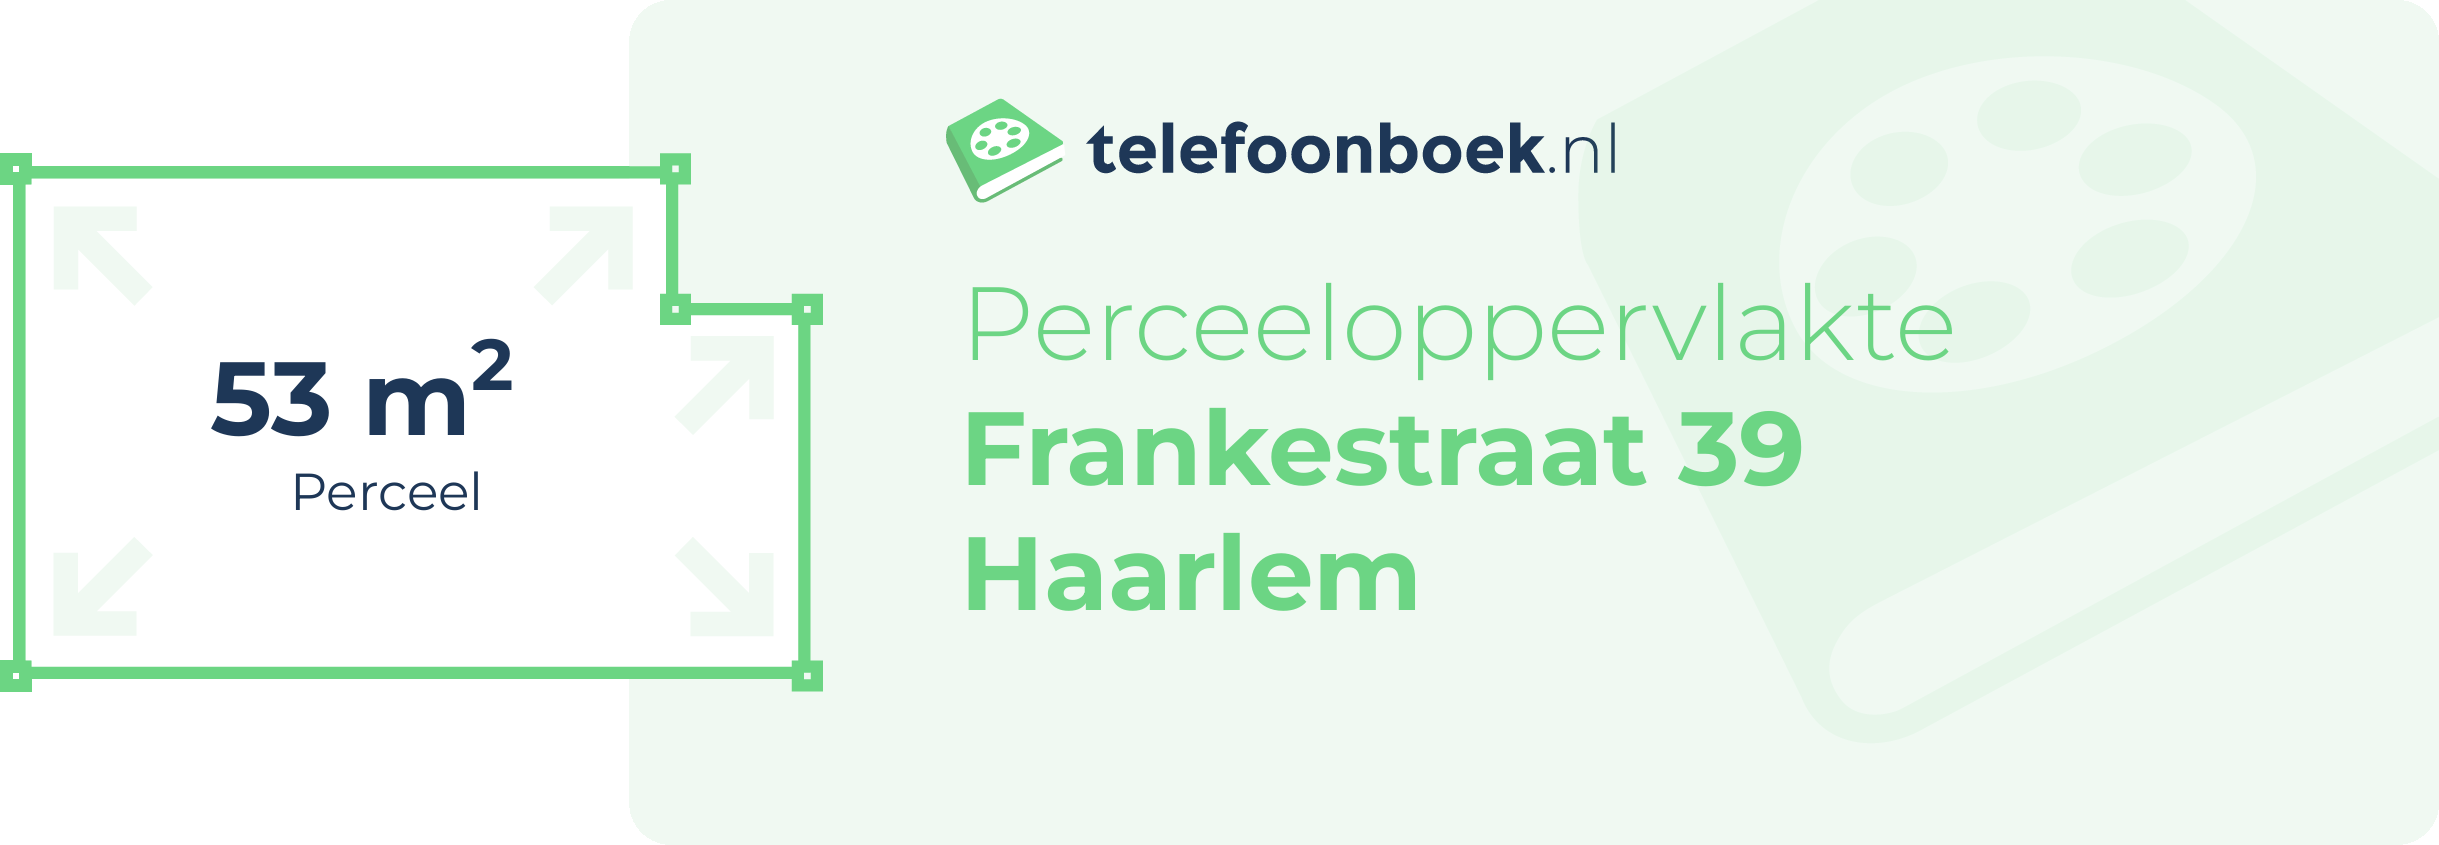 Perceeloppervlakte Frankestraat 39 Haarlem